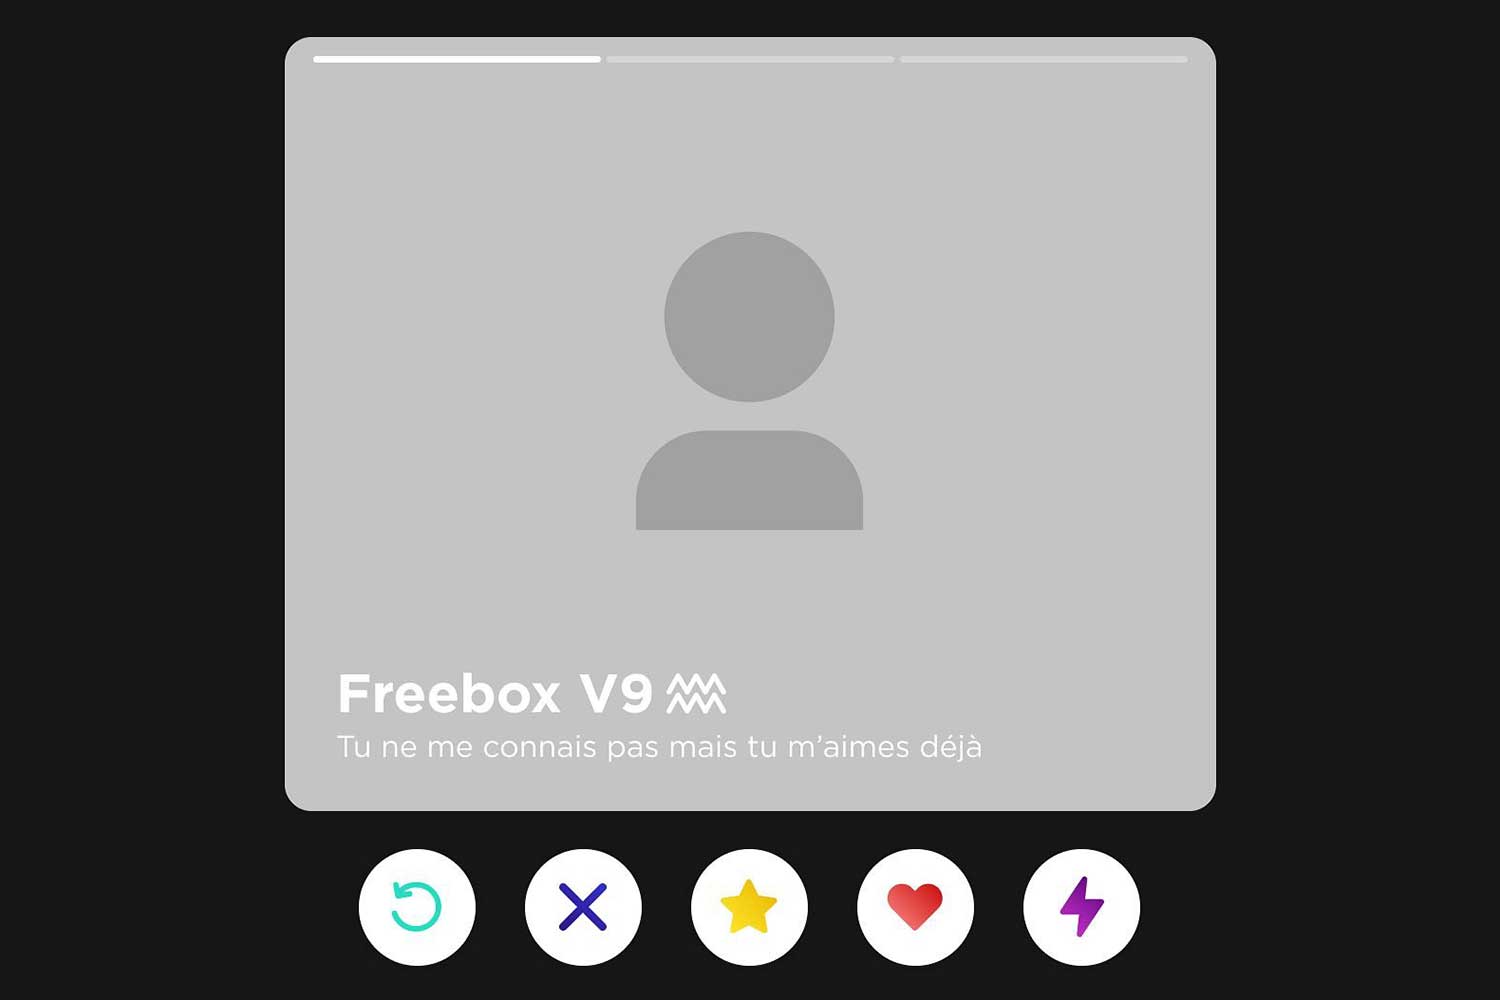 Freebox V9 Insta